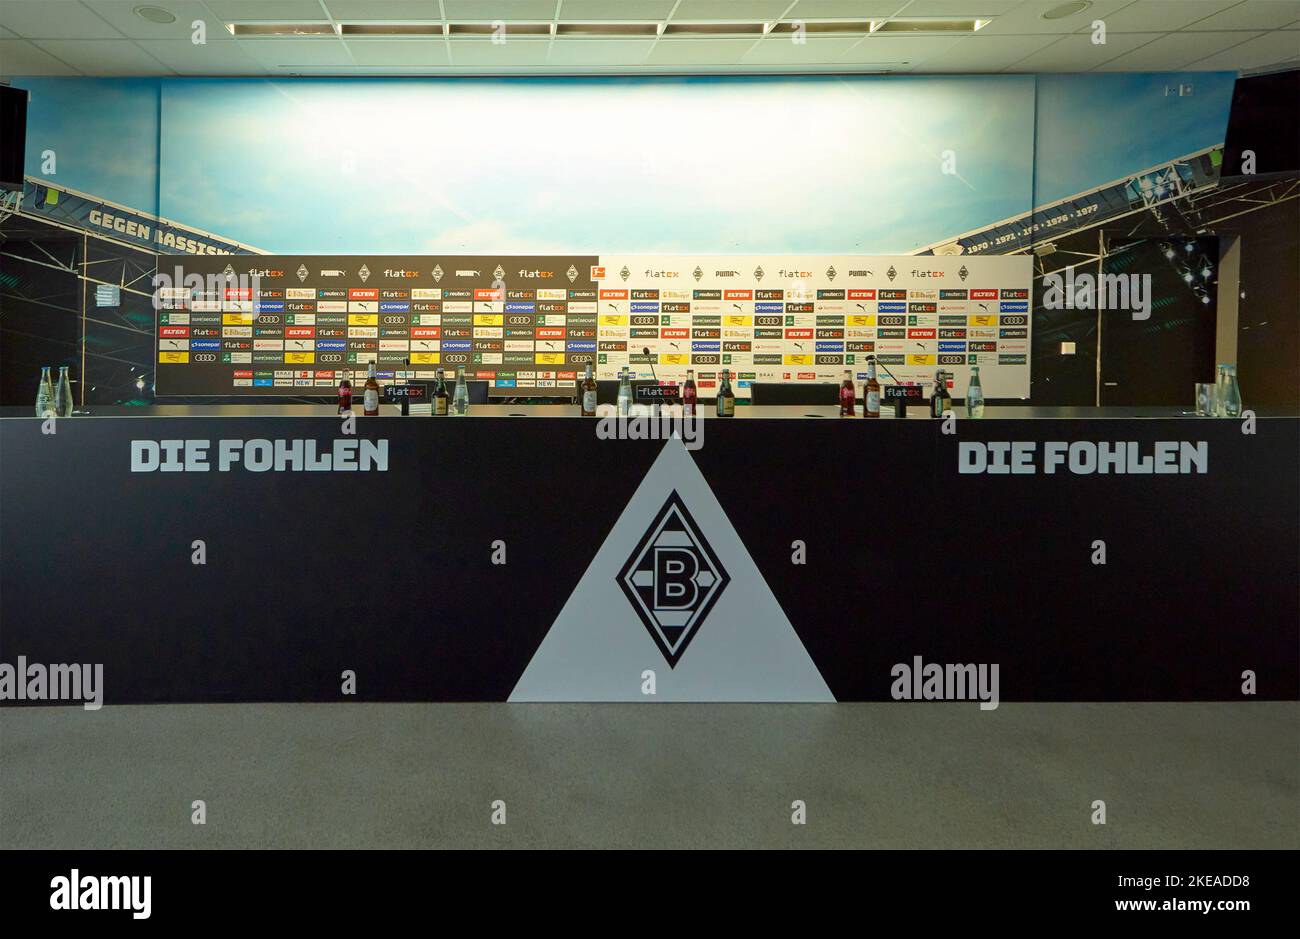 Visitare l'arena Borussia Park - il parco giochi ufficiale del FC Borussia Monchengladbach Foto Stock